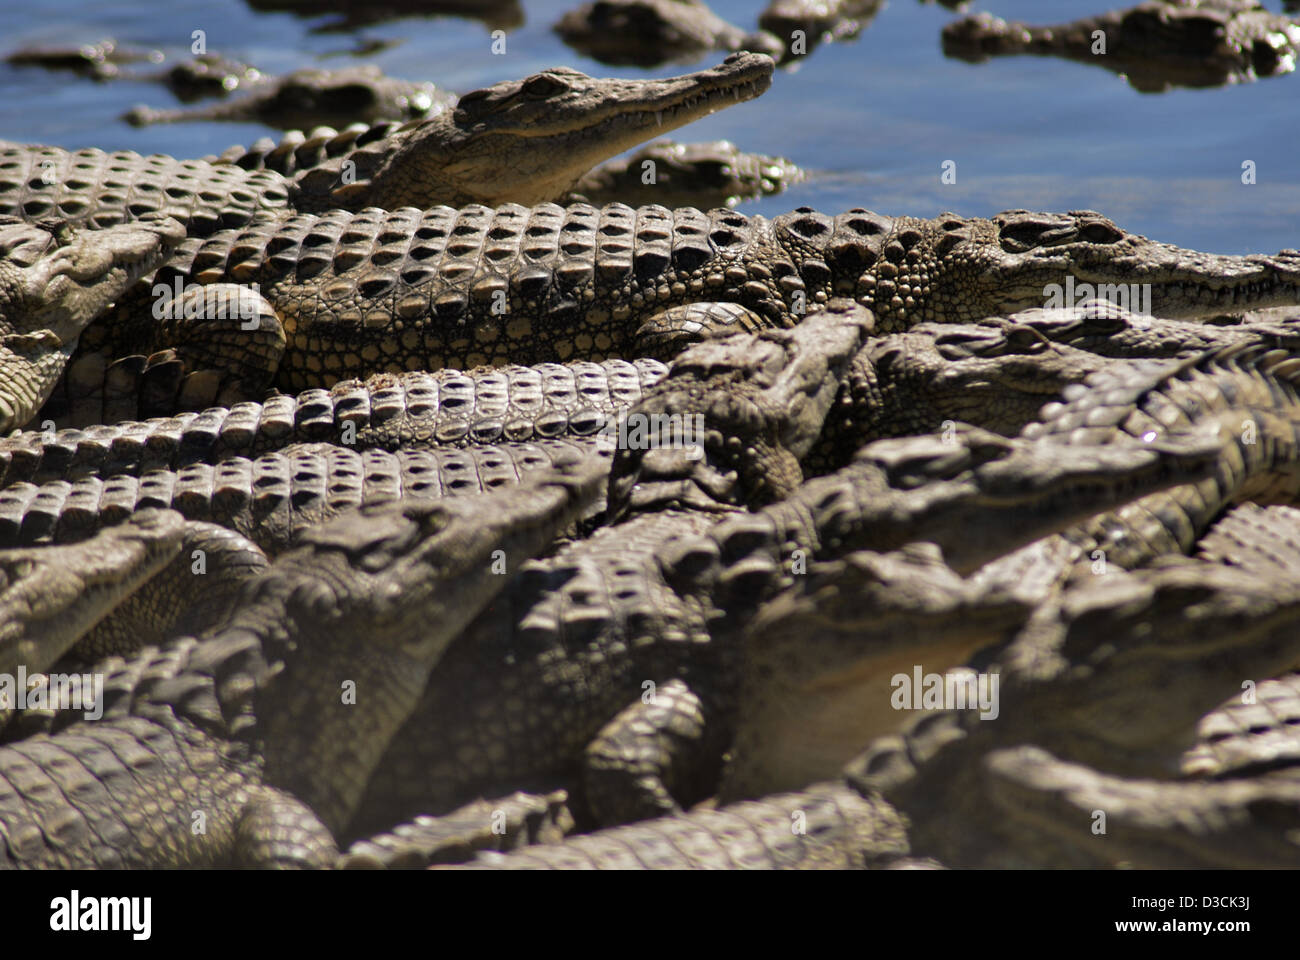 Una fotografia scattata in un allevamento di coccodrilli nel Shire Valley in Malawi. Coccodrilli allevati per la pelle. Foto Stock